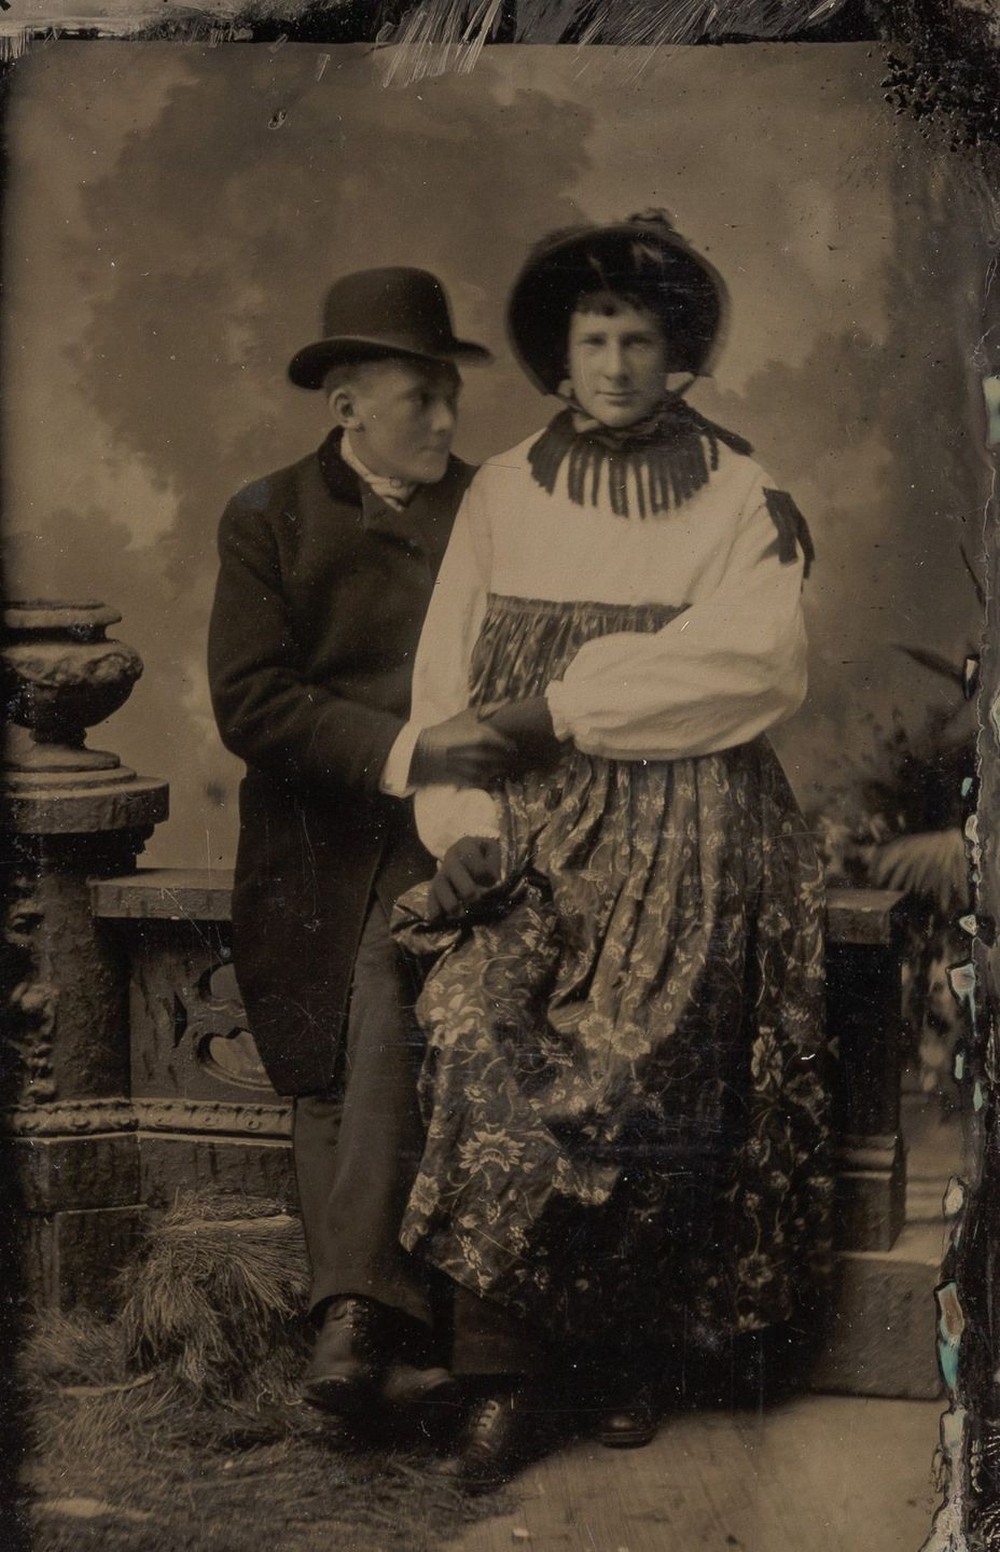 Броманс в викторианскую эпоху: интимные мужские объятия в редких фотографиях конца 1800-х годов  8